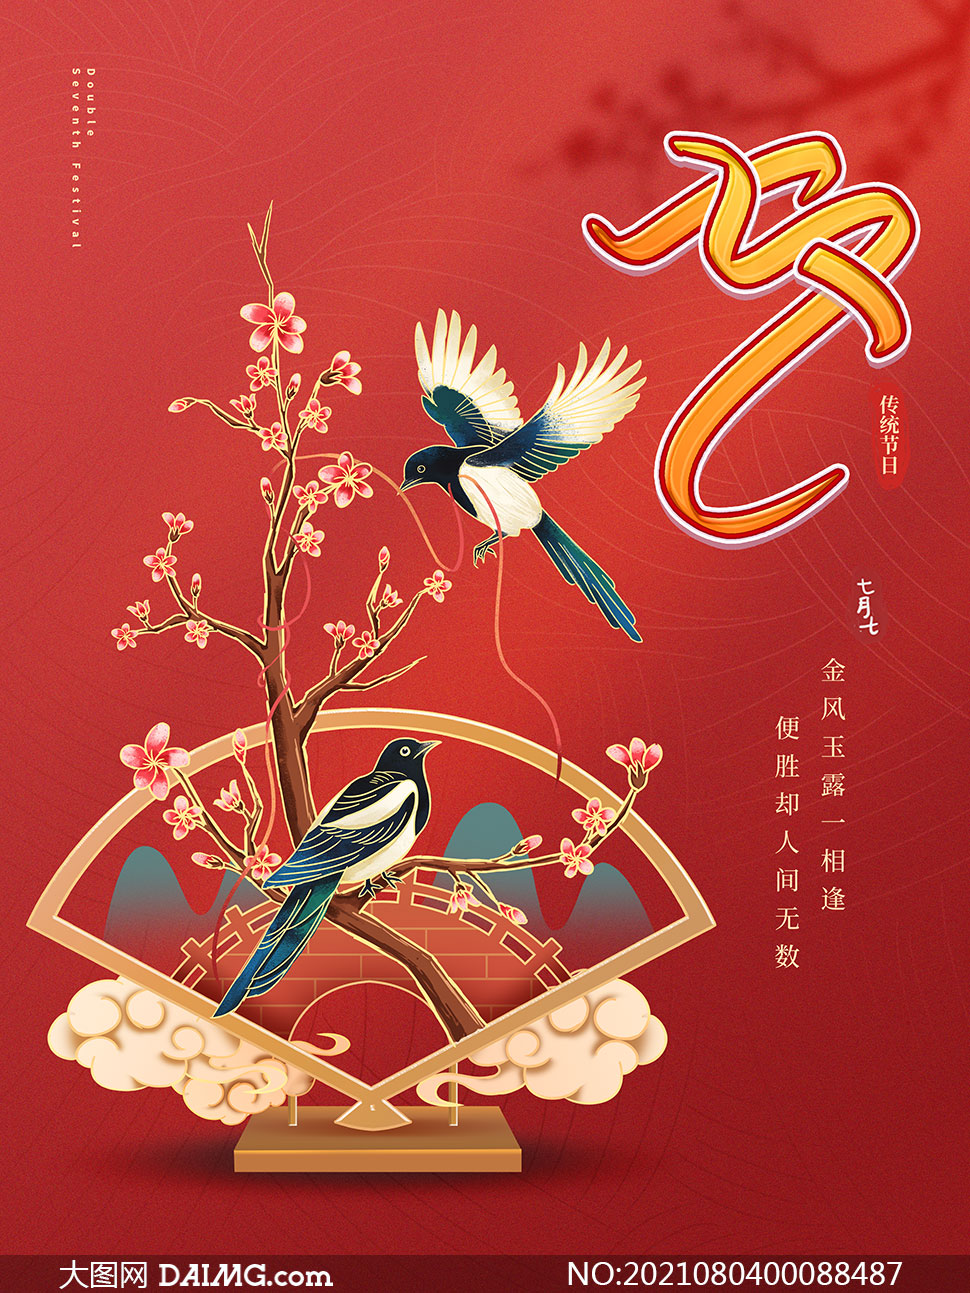 红色主题七夕节活动海报设计psd素材